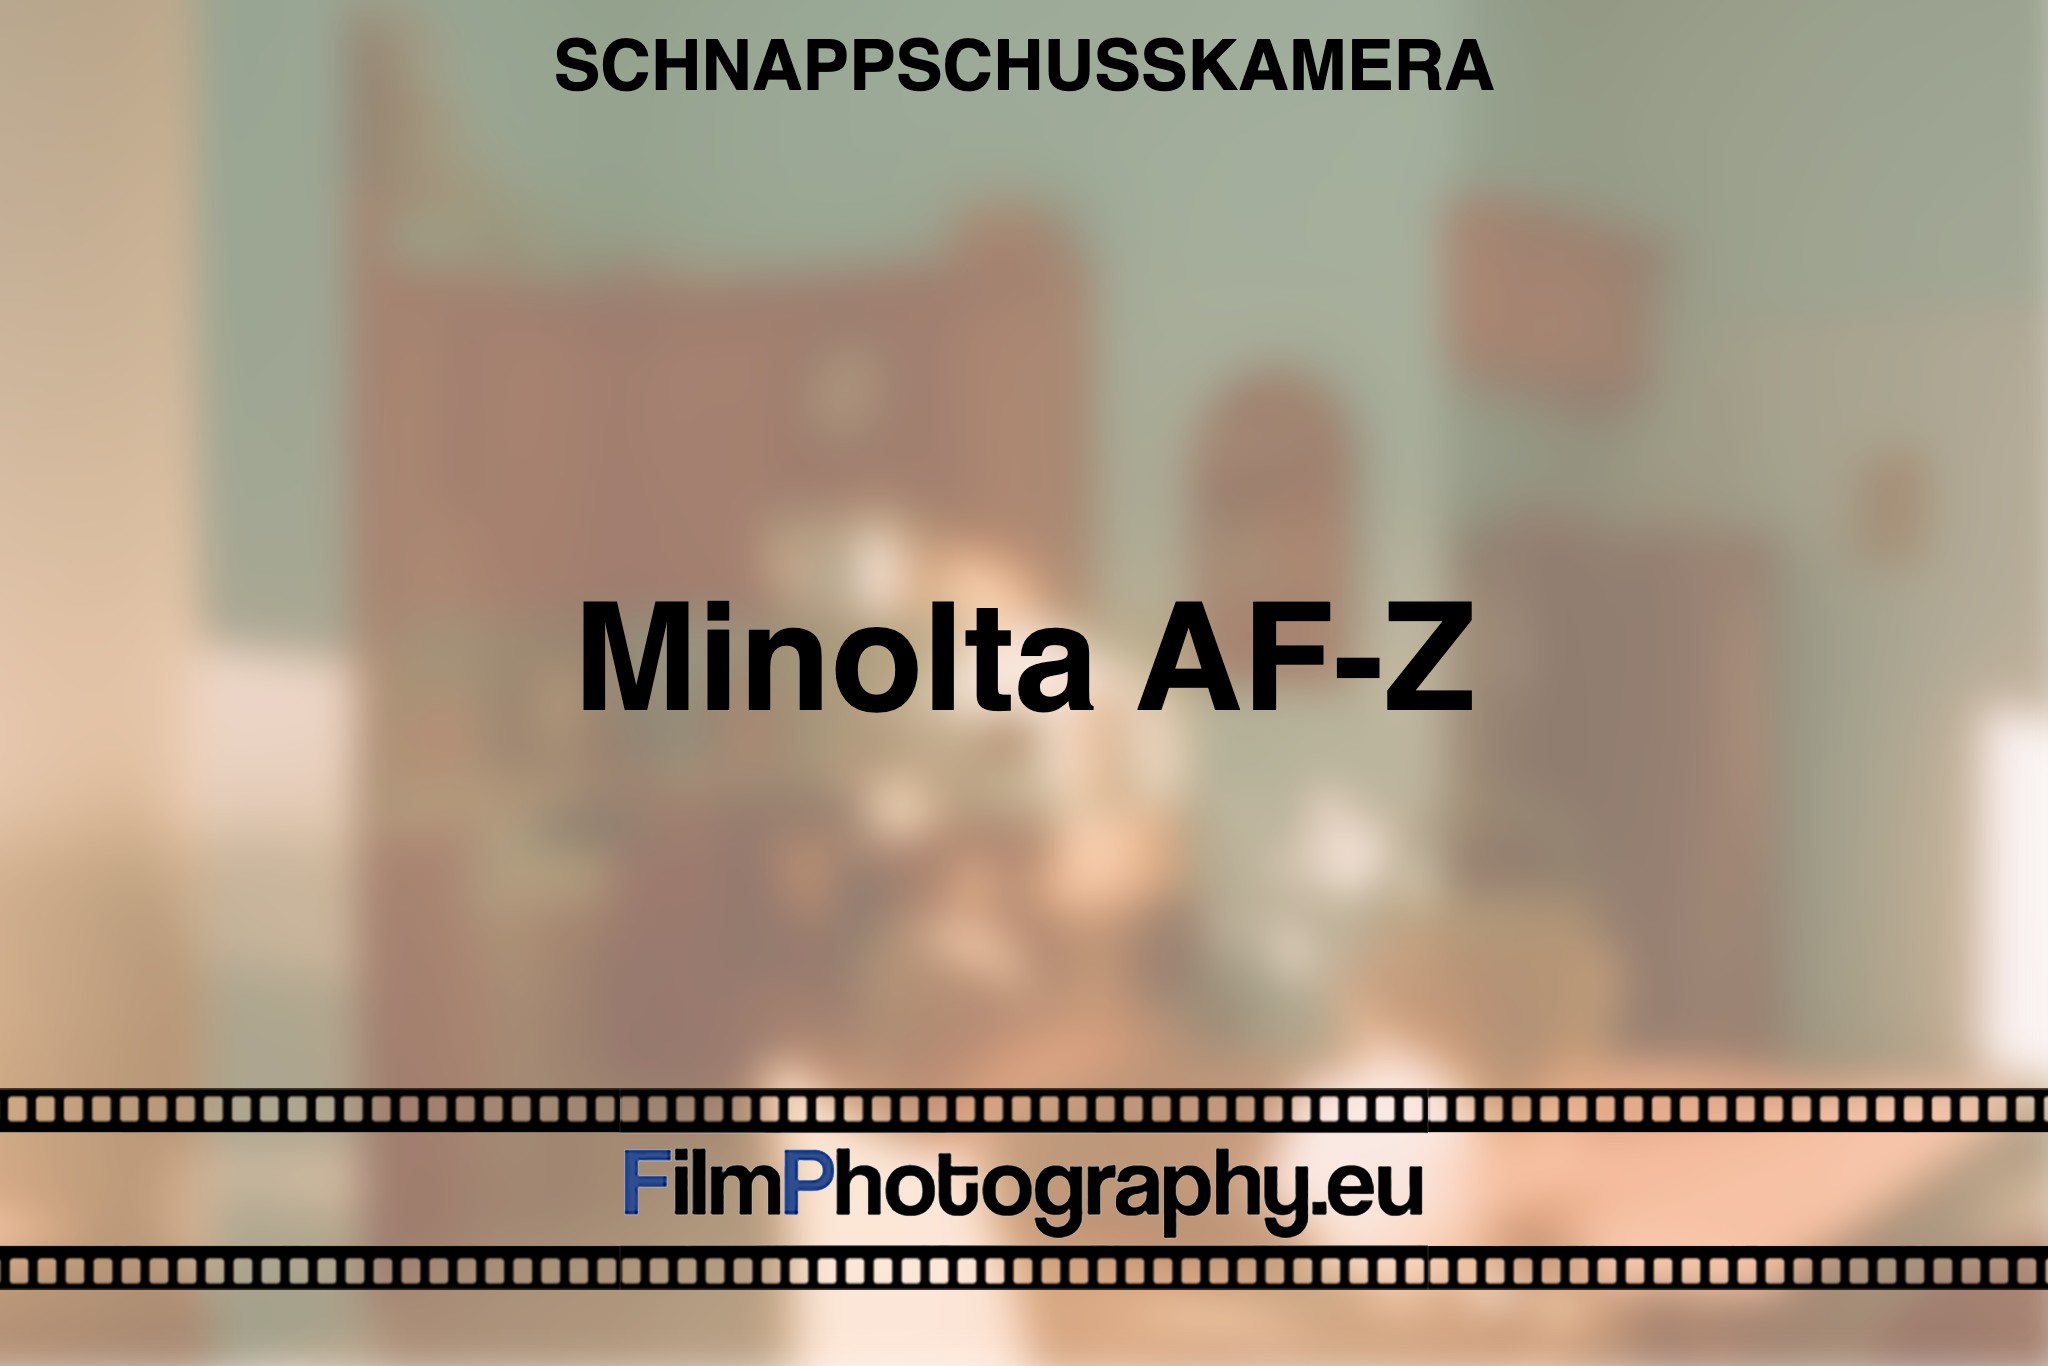 minolta-af-z-schnappschusskamera-bnv